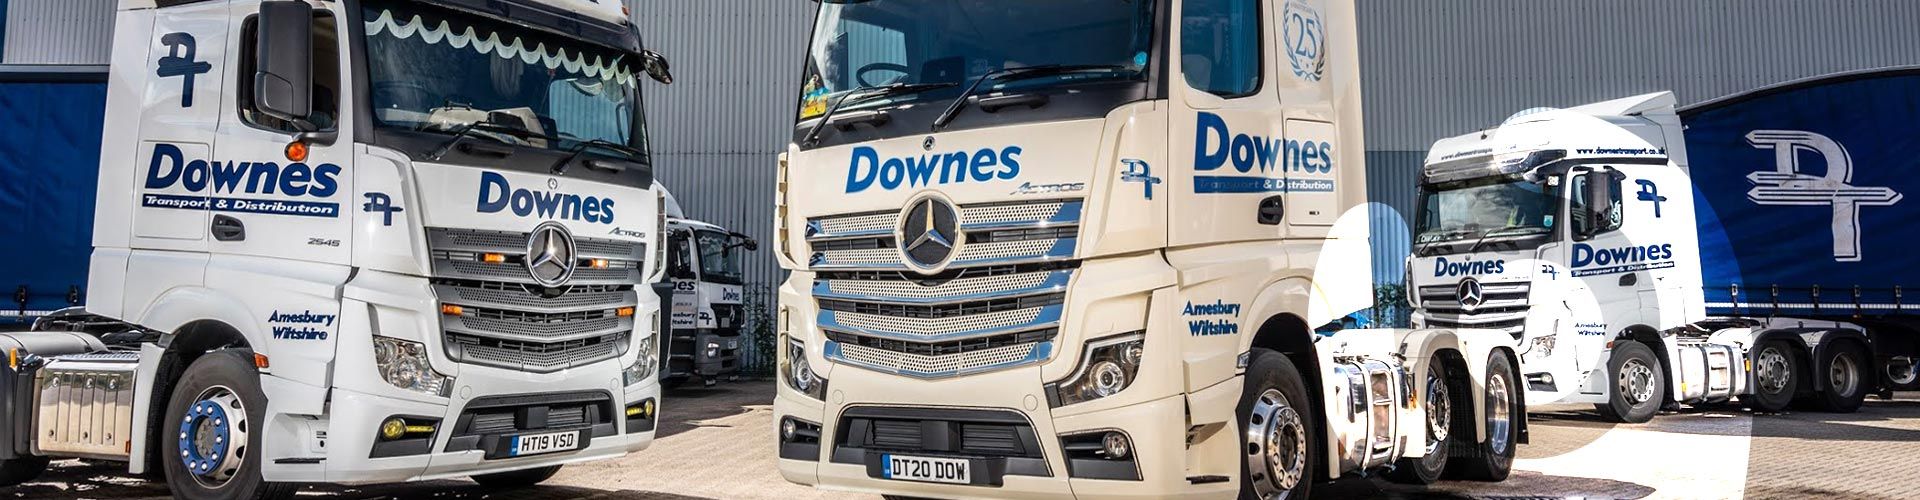 Downes Transport Lorries